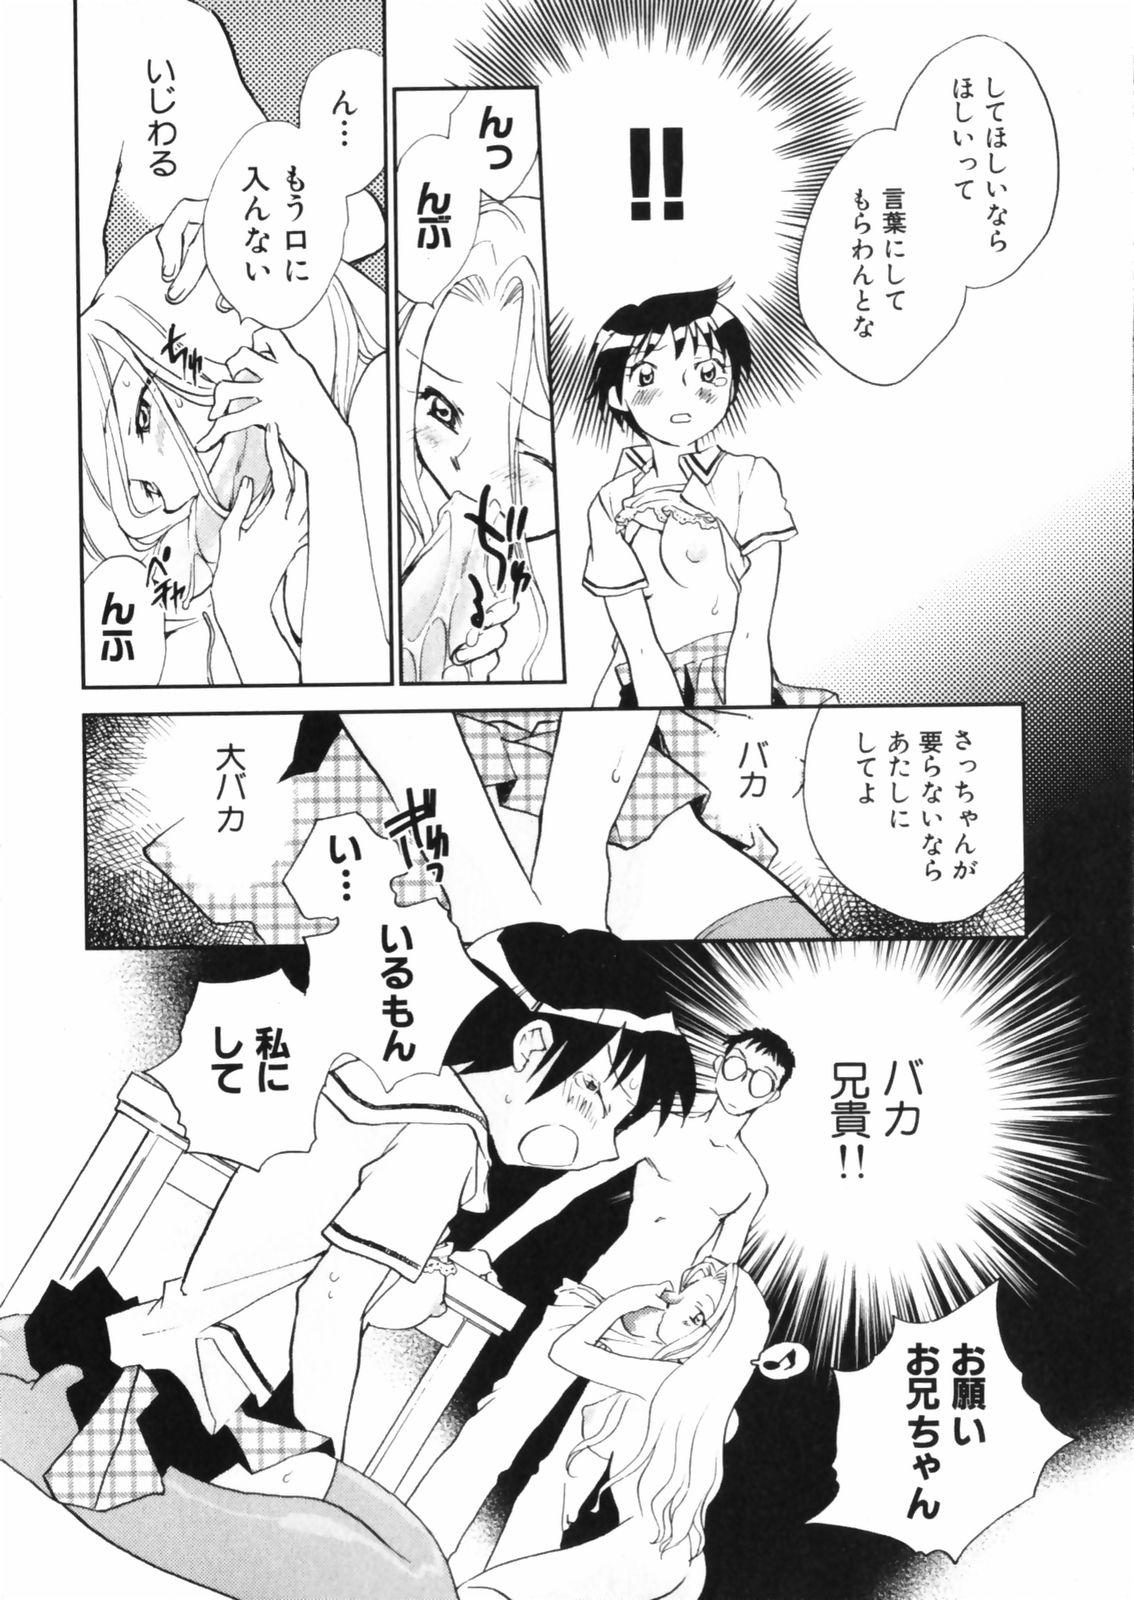 [Okano Ahiru] Hanasake ! Otome Juku (Otome Private Tutoring School) Vol.2 151